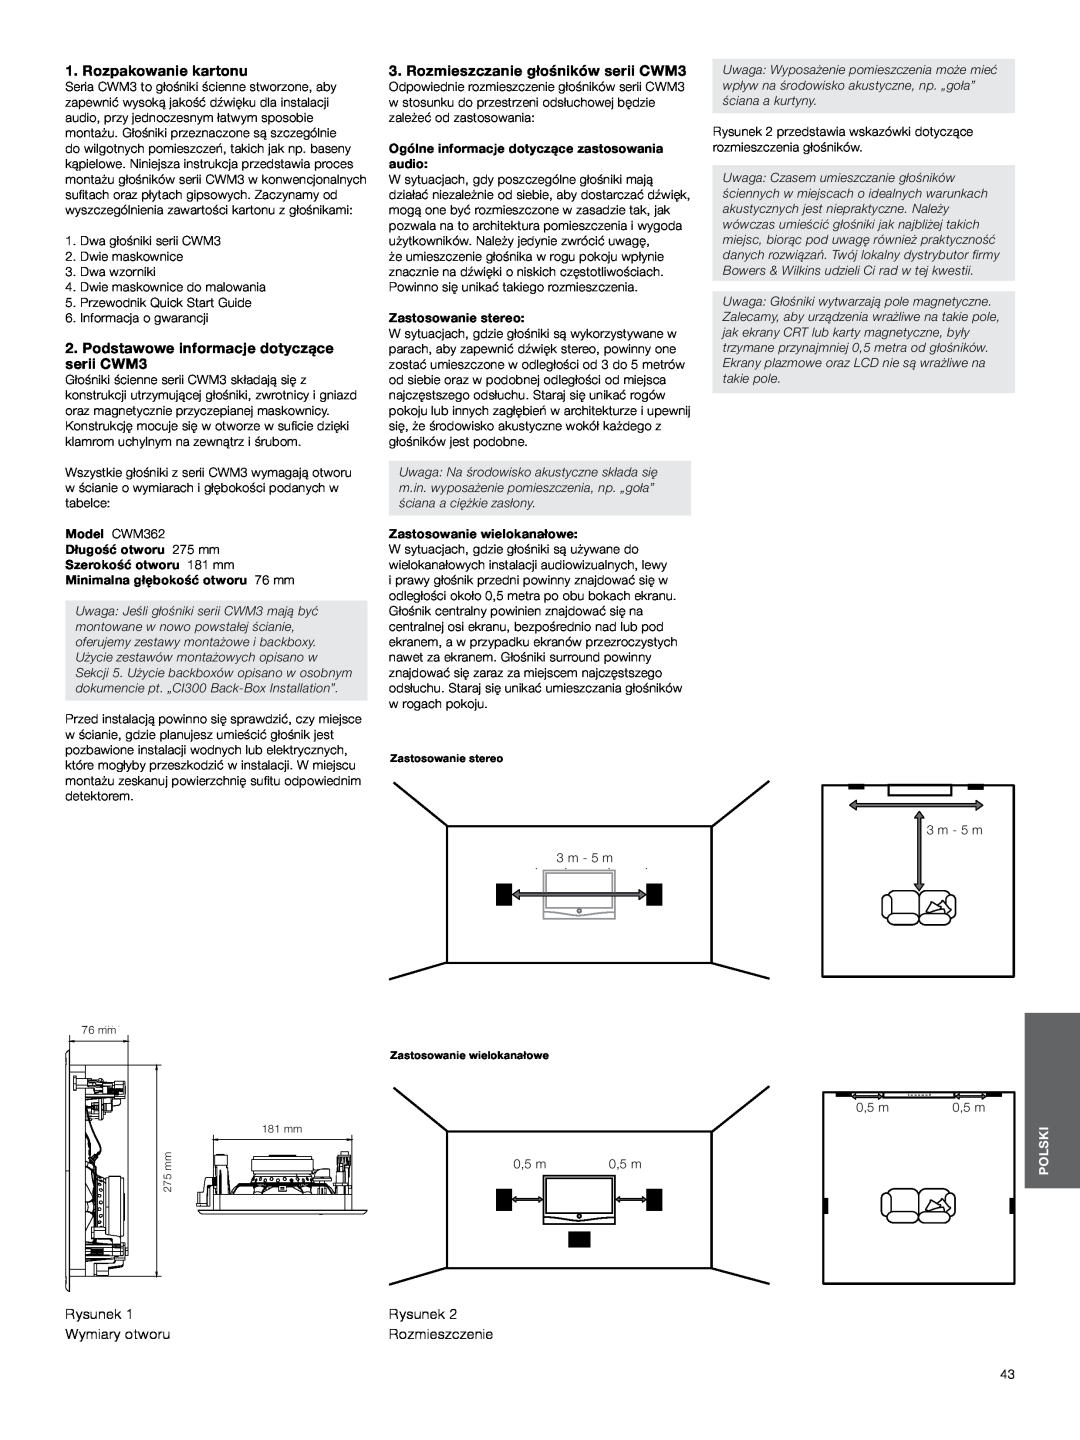 Bowers & Wilkins Rozpakowanie kartonu, Podstawowe informacje dotyczące serii CWM3, Rozmieszczanie głośników serii CWM3 